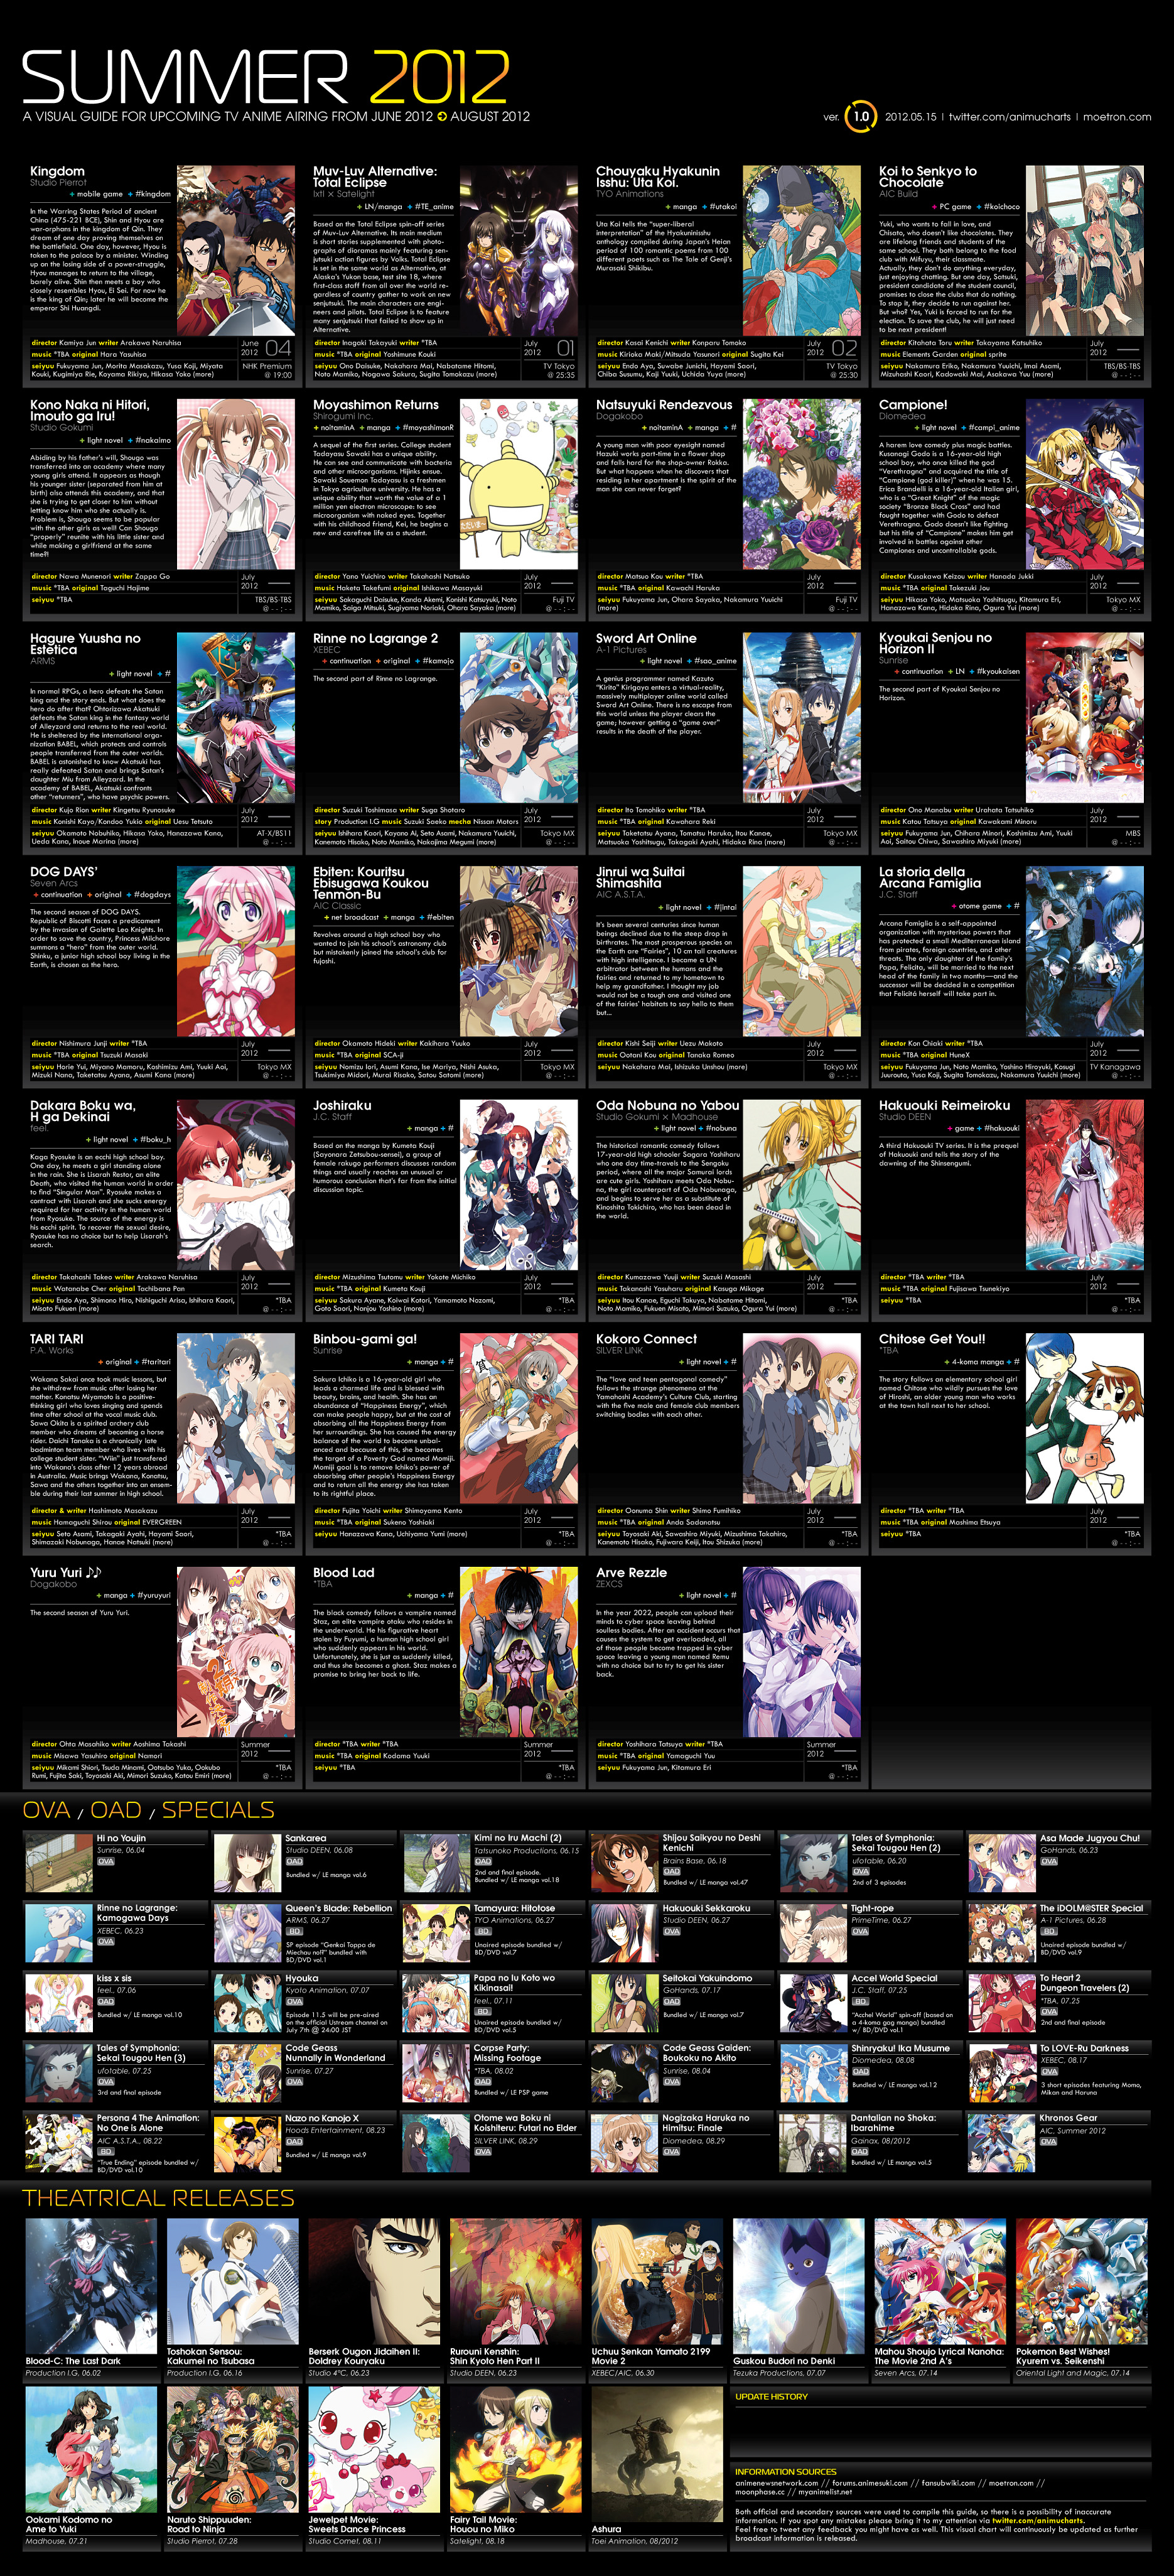 Light Novel Anime Chart